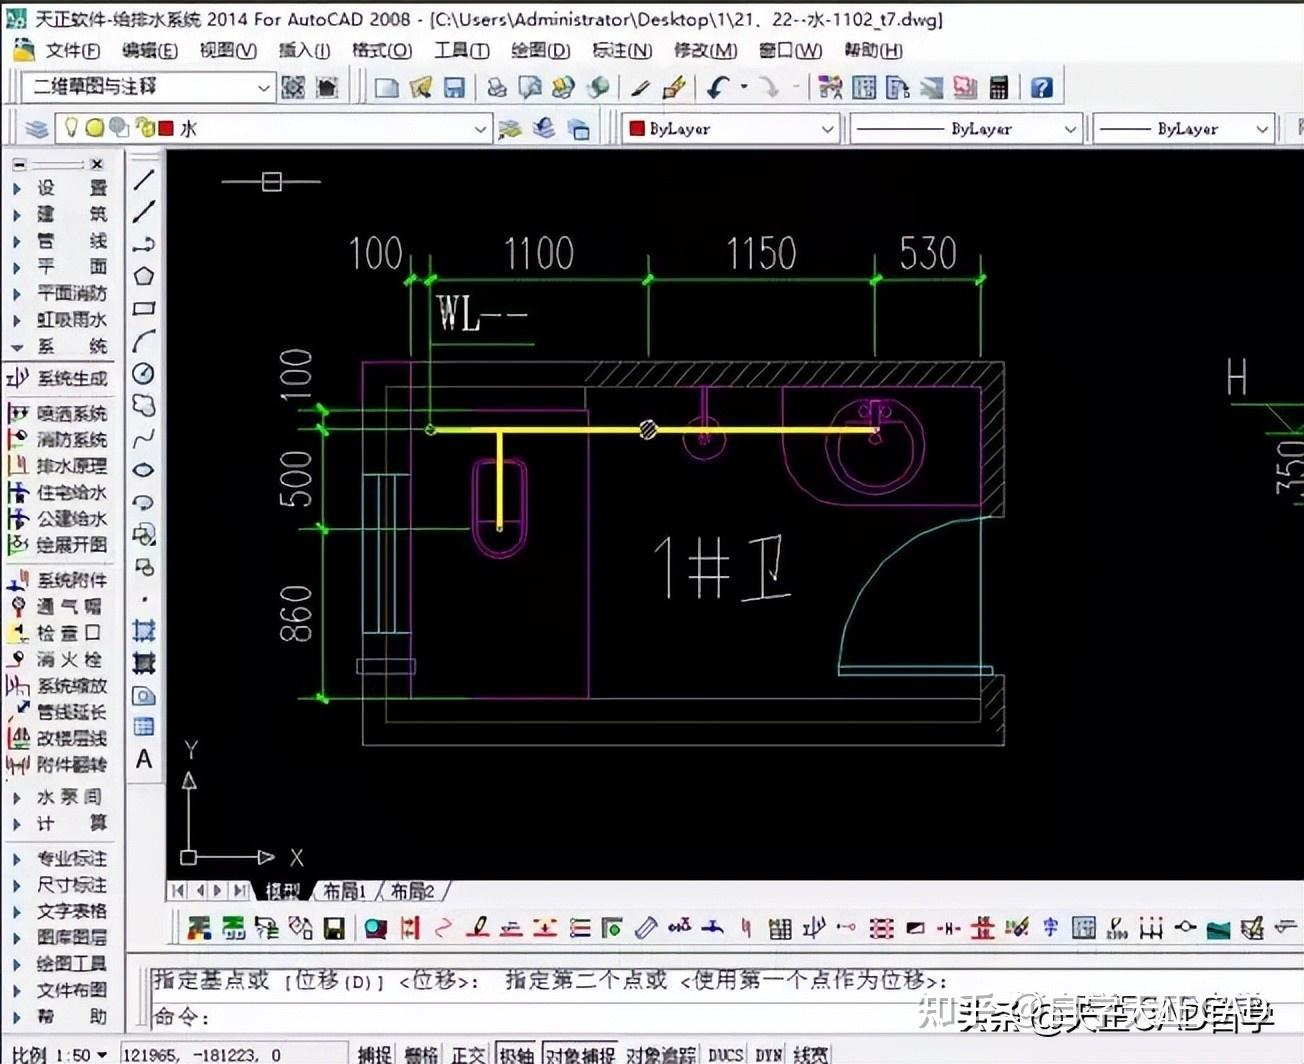 2015中文版天正CAD绘图建筑室外室内设计施工图自学高级 CAD教程-教育视频-搜狐视频